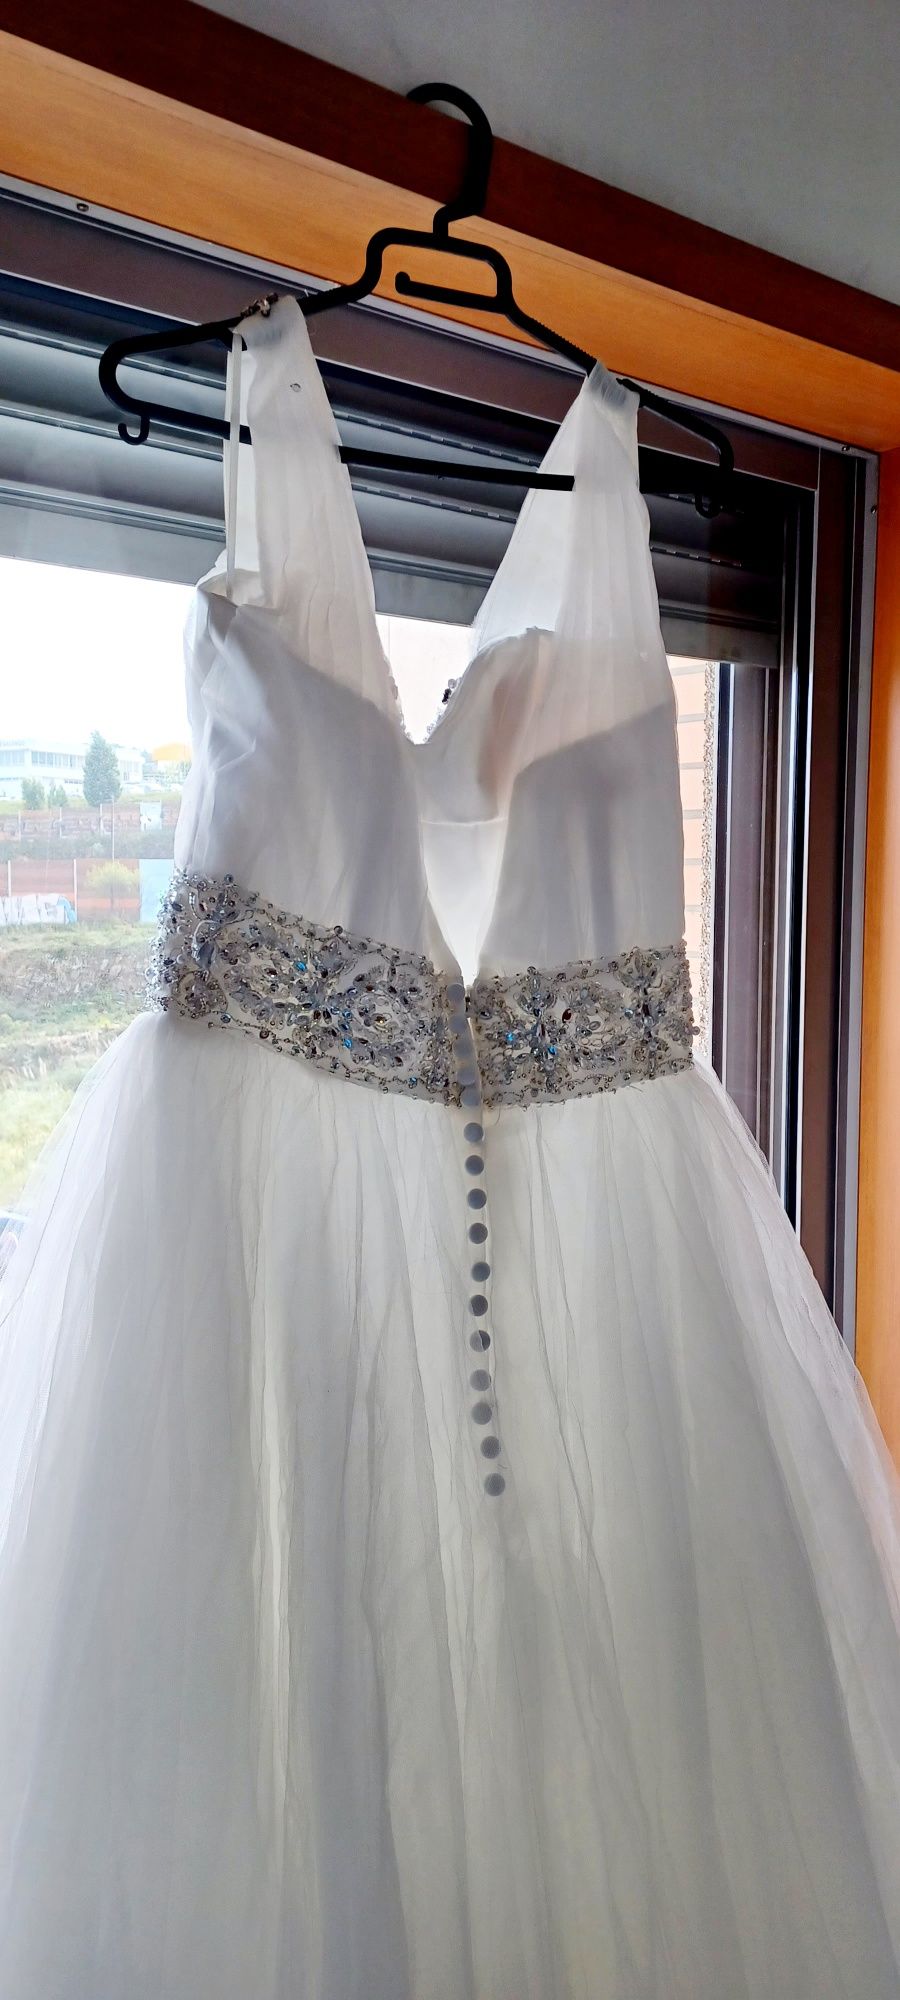 Vendo vestido de noiva